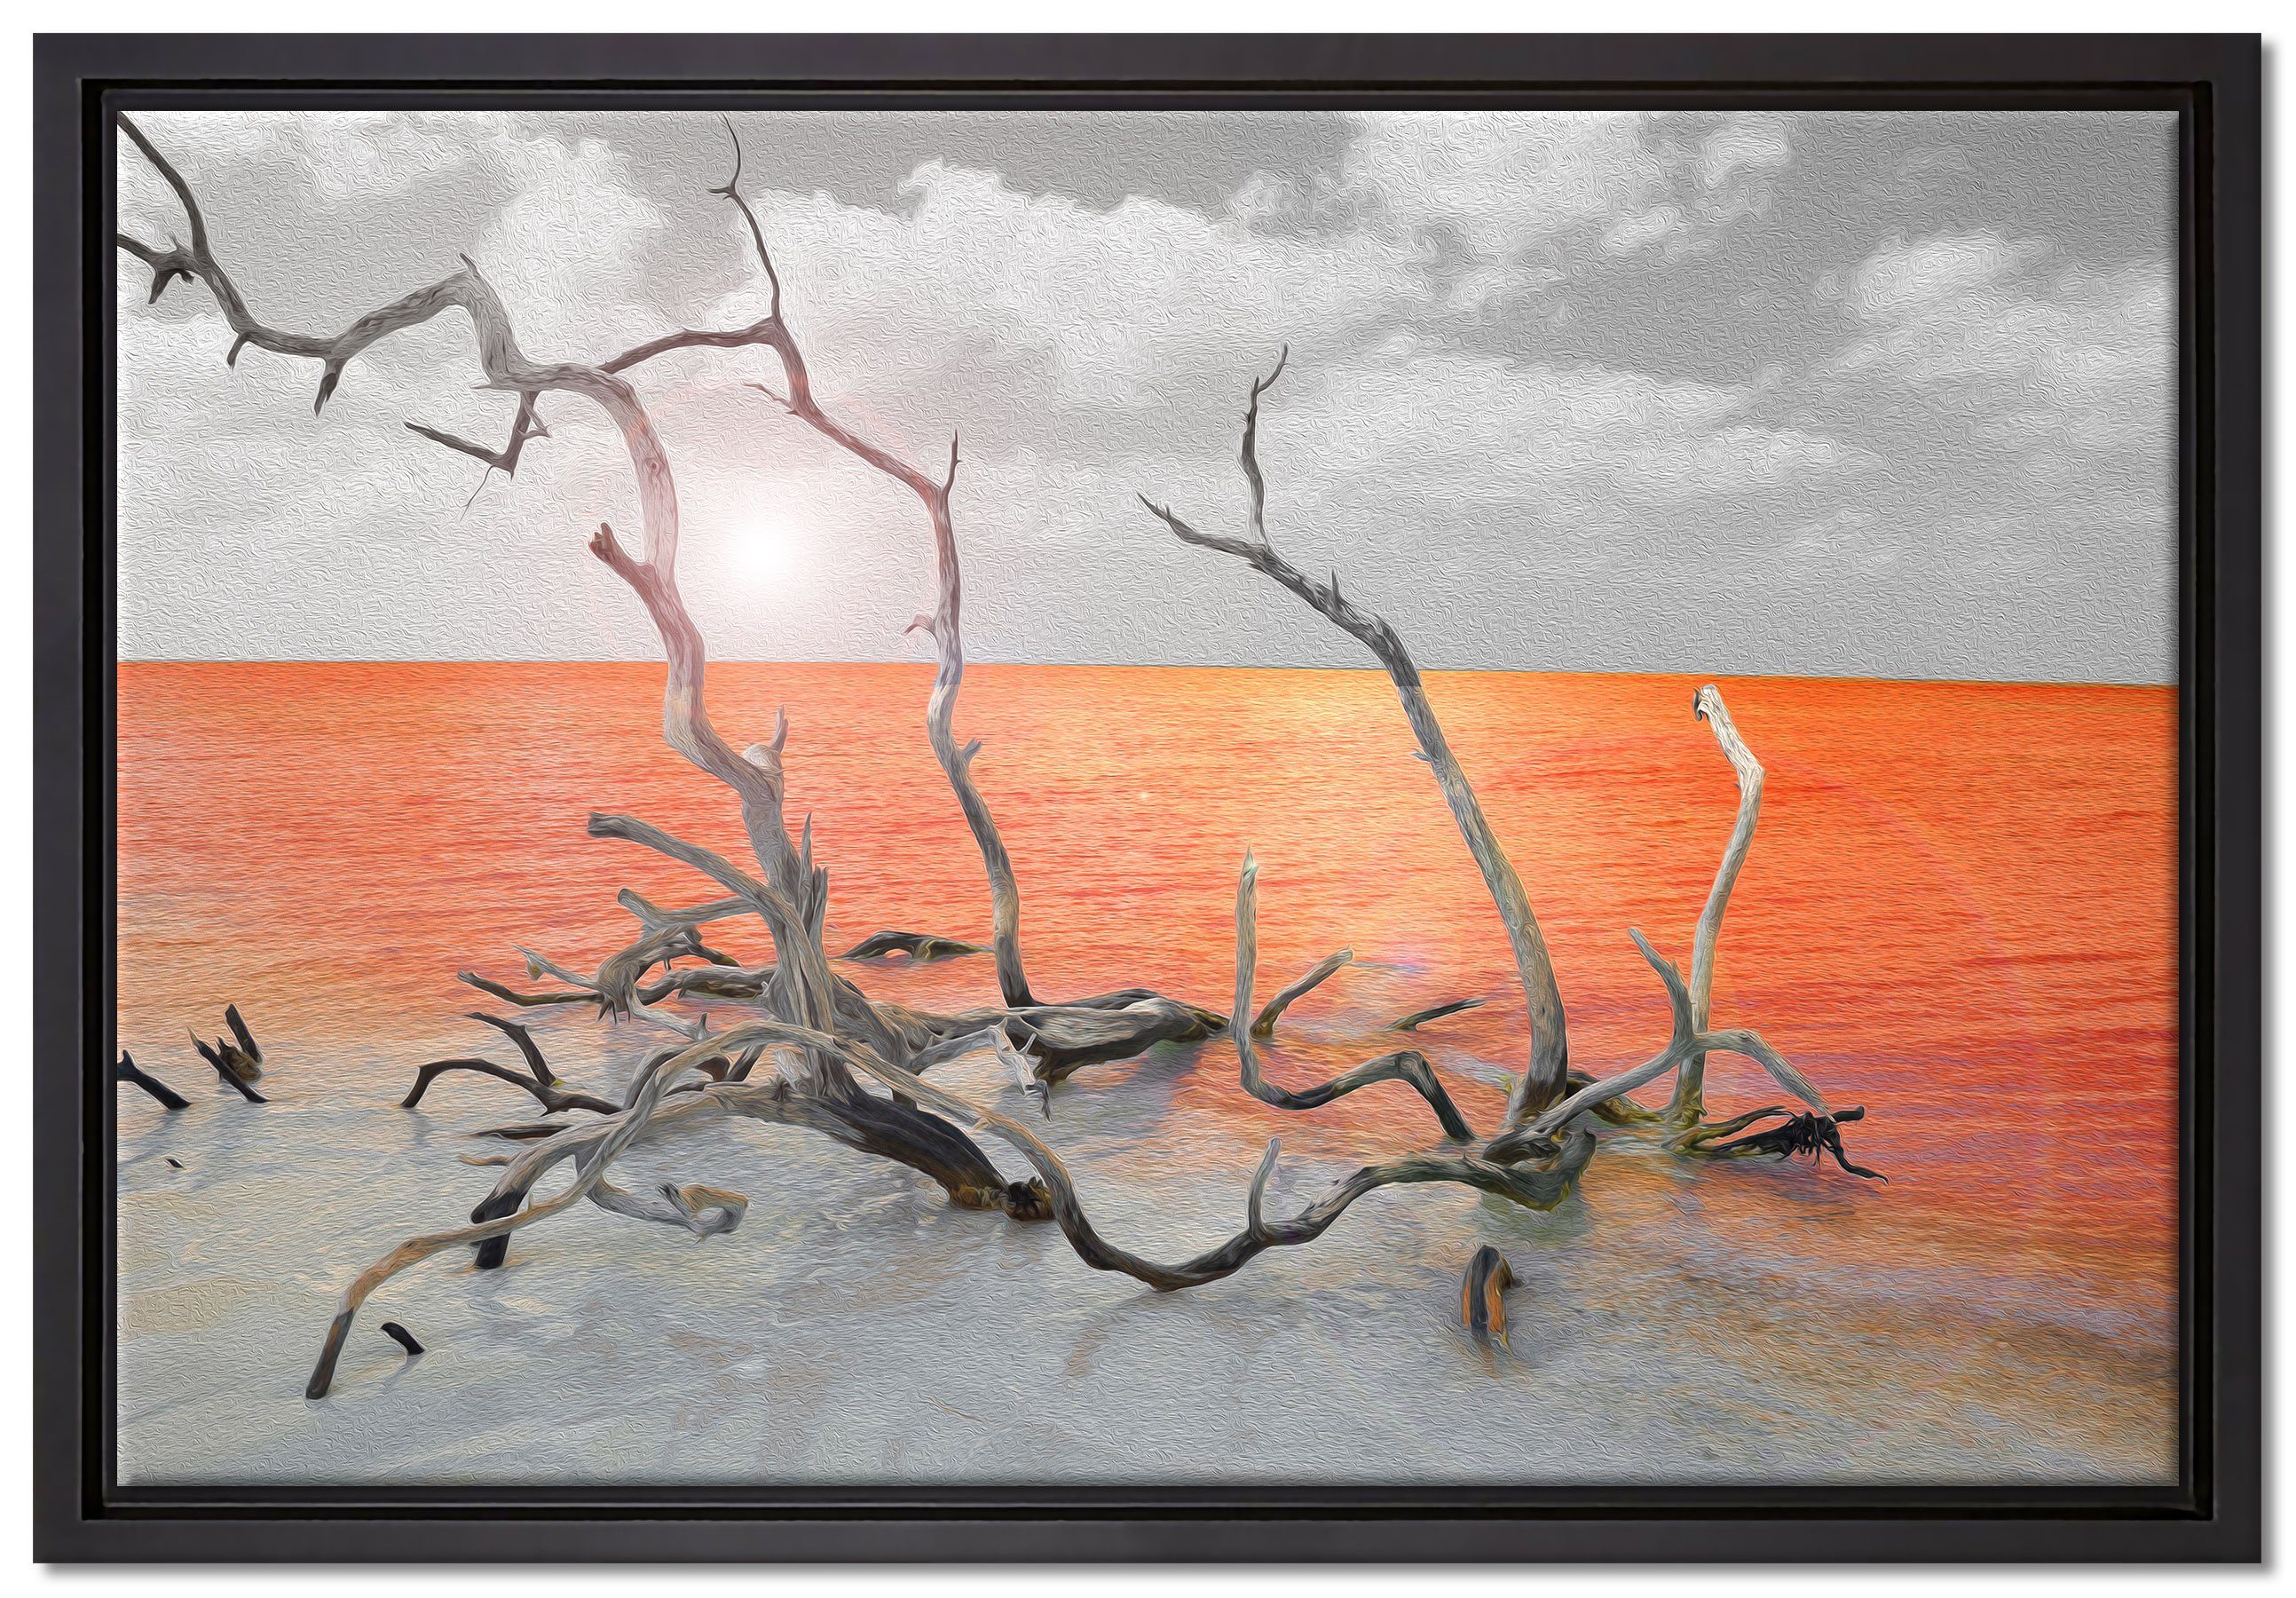 Pixxprint Leinwandbild Treibgut am Meer, Wanddekoration (1 St), Leinwandbild fertig bespannt, in einem Schattenfugen-Bilderrahmen gefasst, inkl. Zackenaufhänger